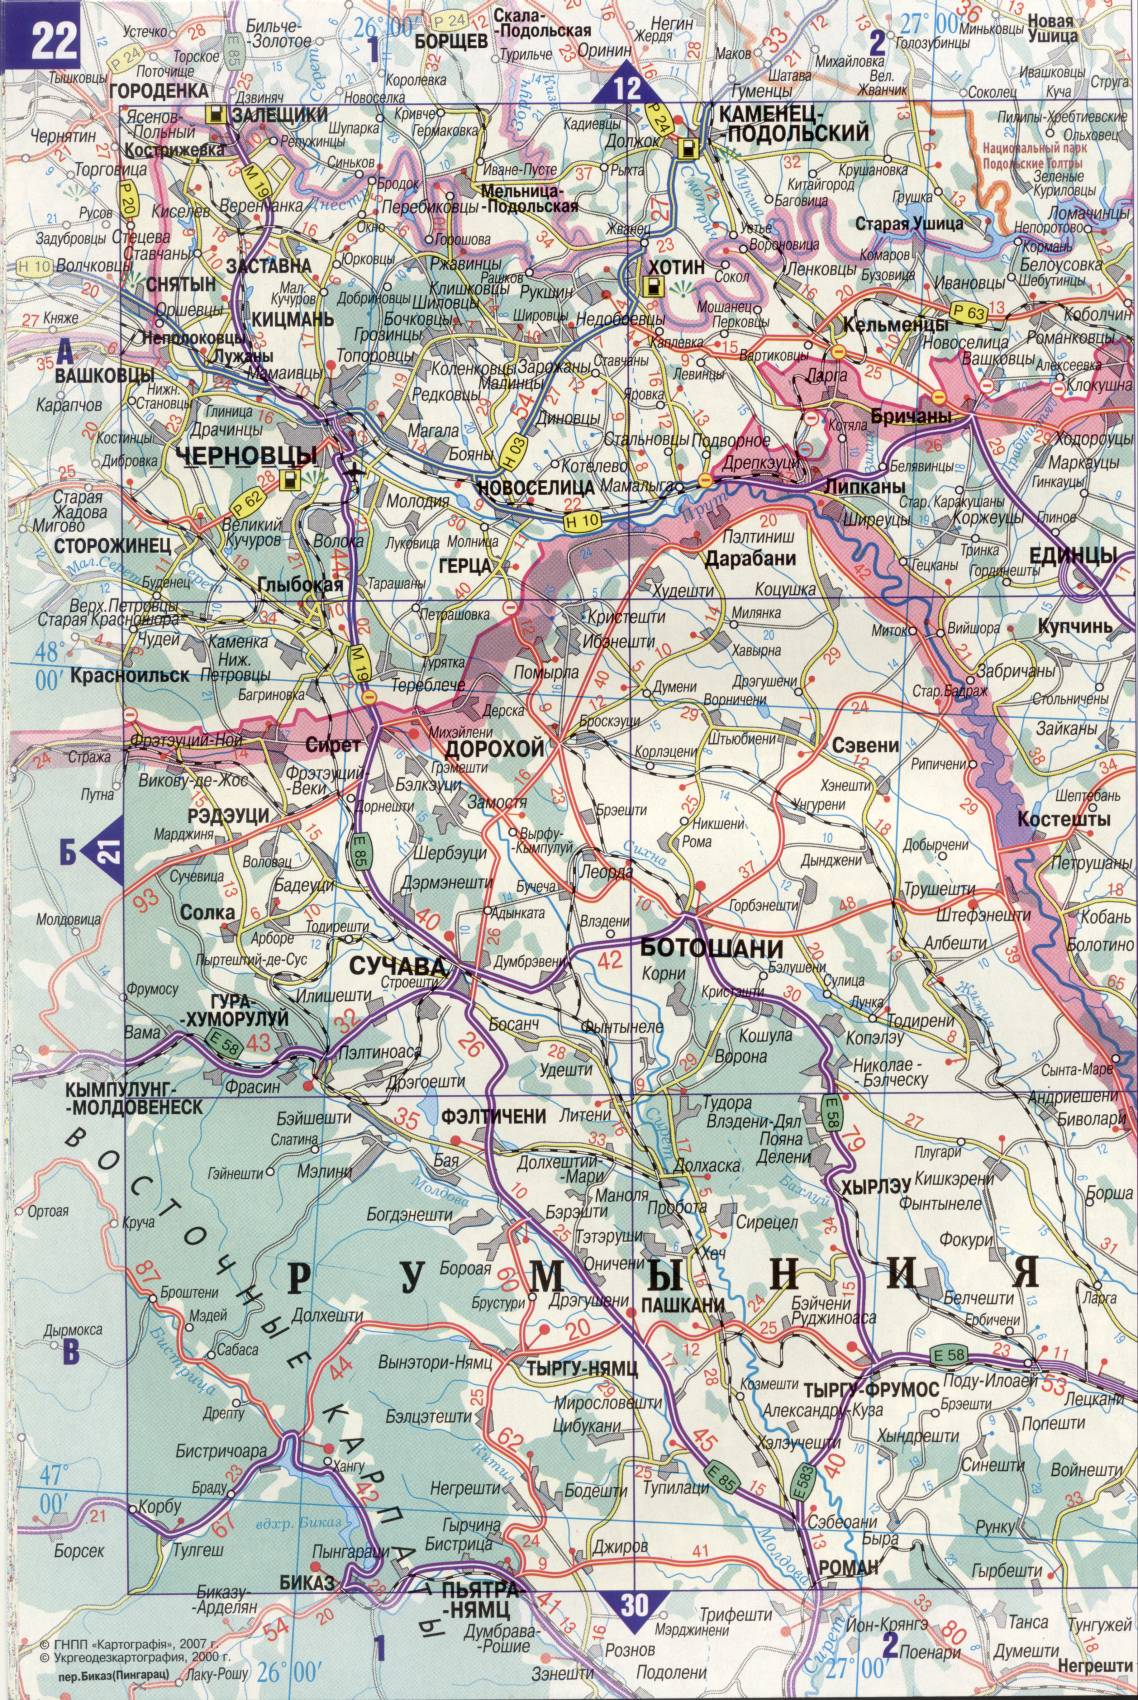 Karte der Ukraine. Detaillierte Straßenkarte der Ukraine avtomobilnog Satin. kostenlos herunterladen, C2